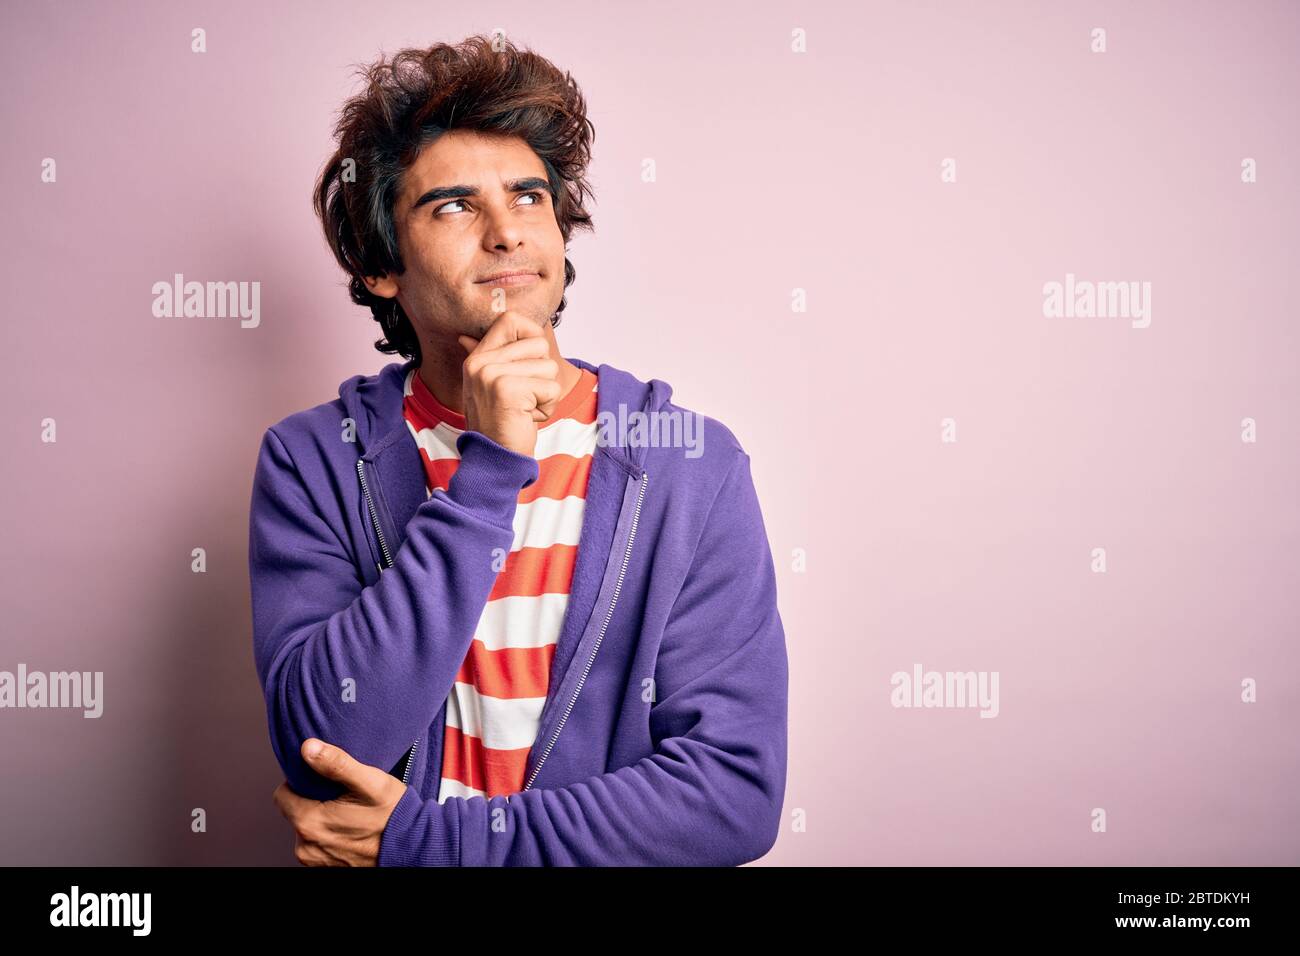 Jeune homme portant un t-shirt rayé et un sweat-shirt violet sur fond rose isolé avec la main sur le menton pensant à la question, l'expression pensive. SM Banque D'Images